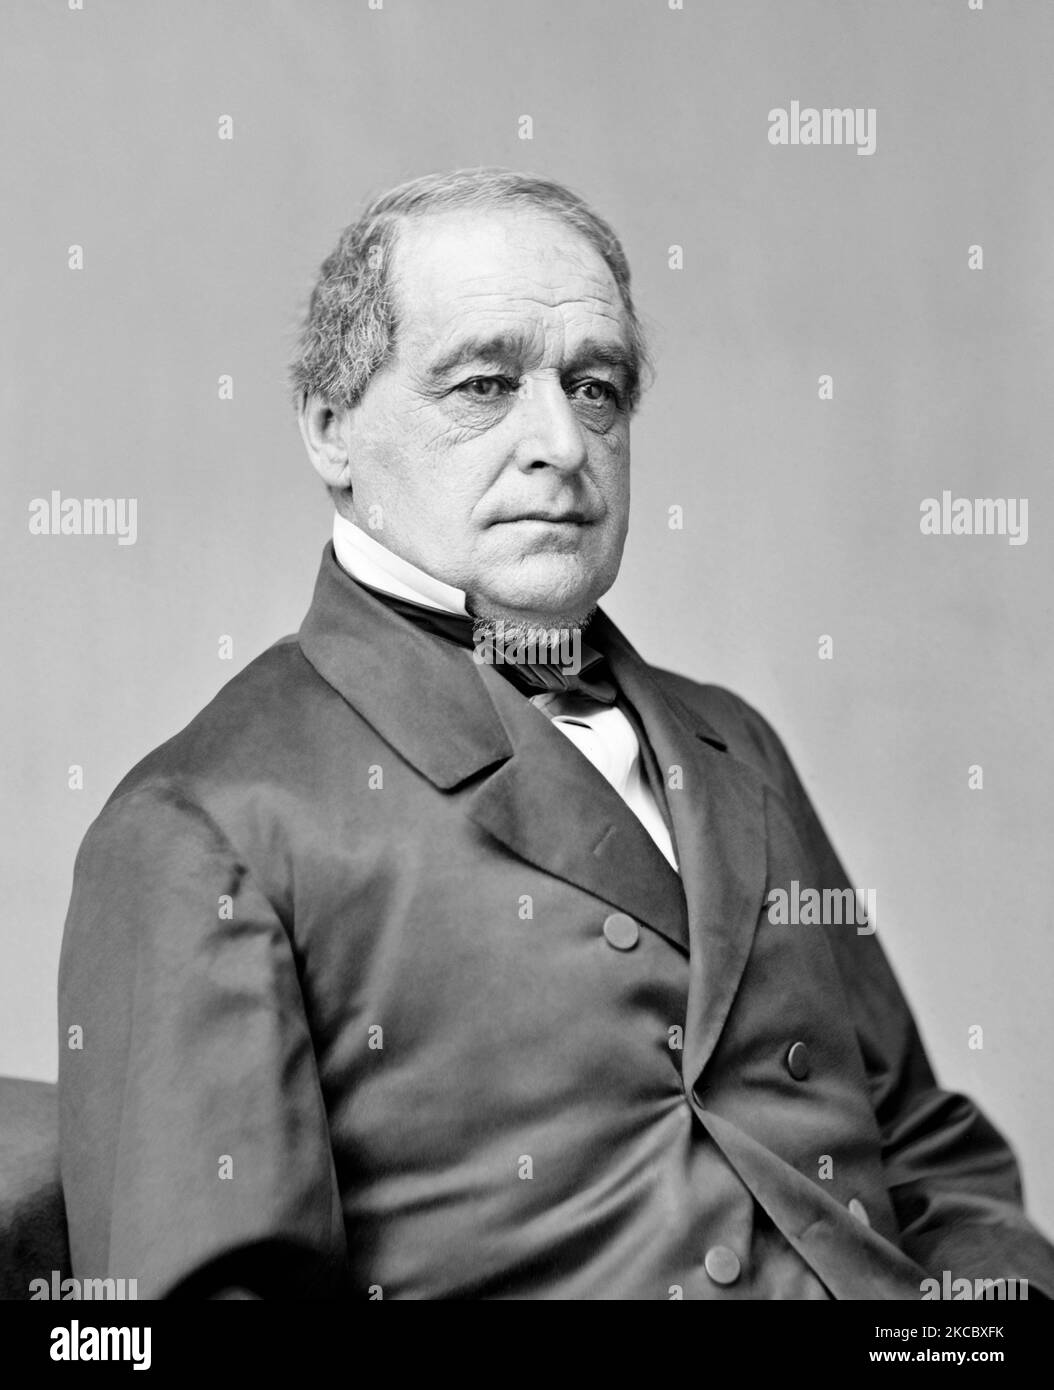 Porträt von Hannibal Hamlin, einem Politiker, der 15. als Vizepräsident fungierte. Stockfoto